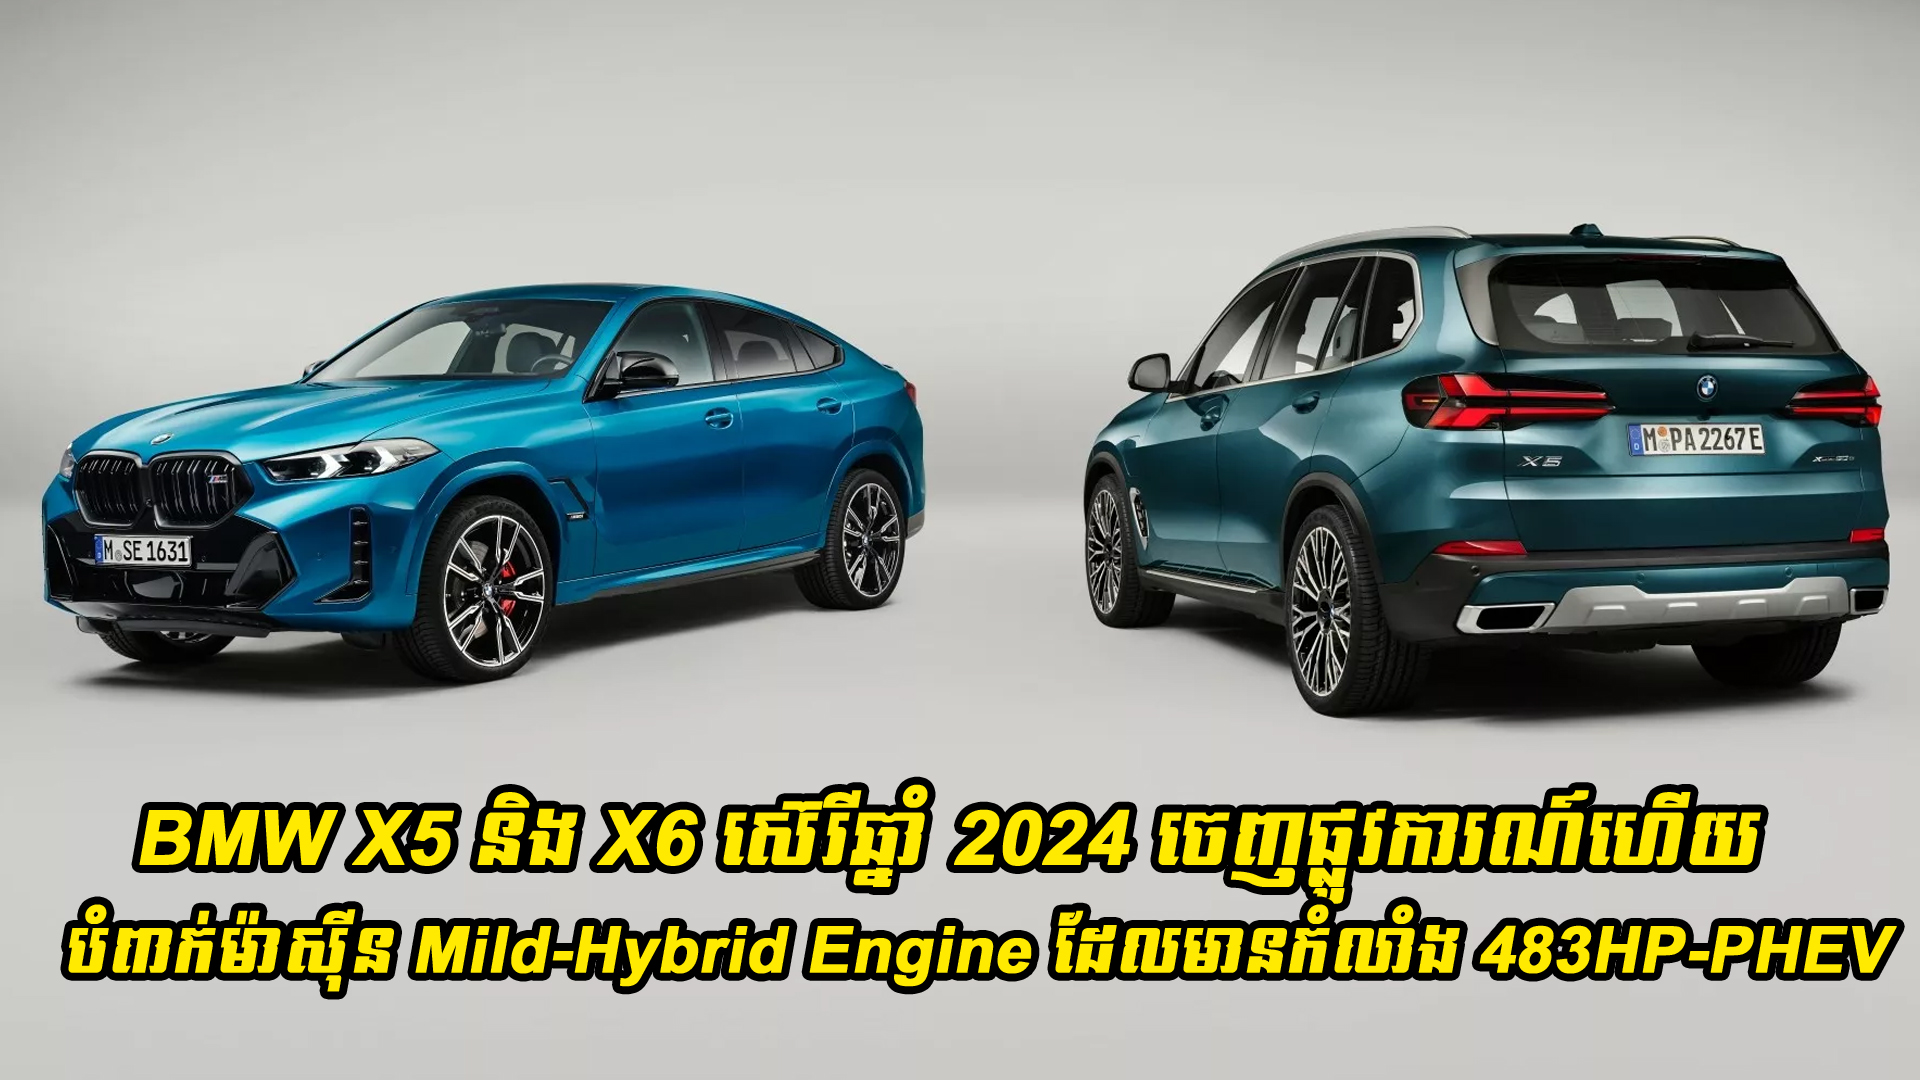 BMW X5 និង X6 ស៊េរីឆ្នាំ 2024 ចេញផ្លូវការណ៍ហើយដោយបំពាក់ម៉ាស៊ីន Mild-Hybrid Engine ដែលមានកំលាំង 483HP-PHEV